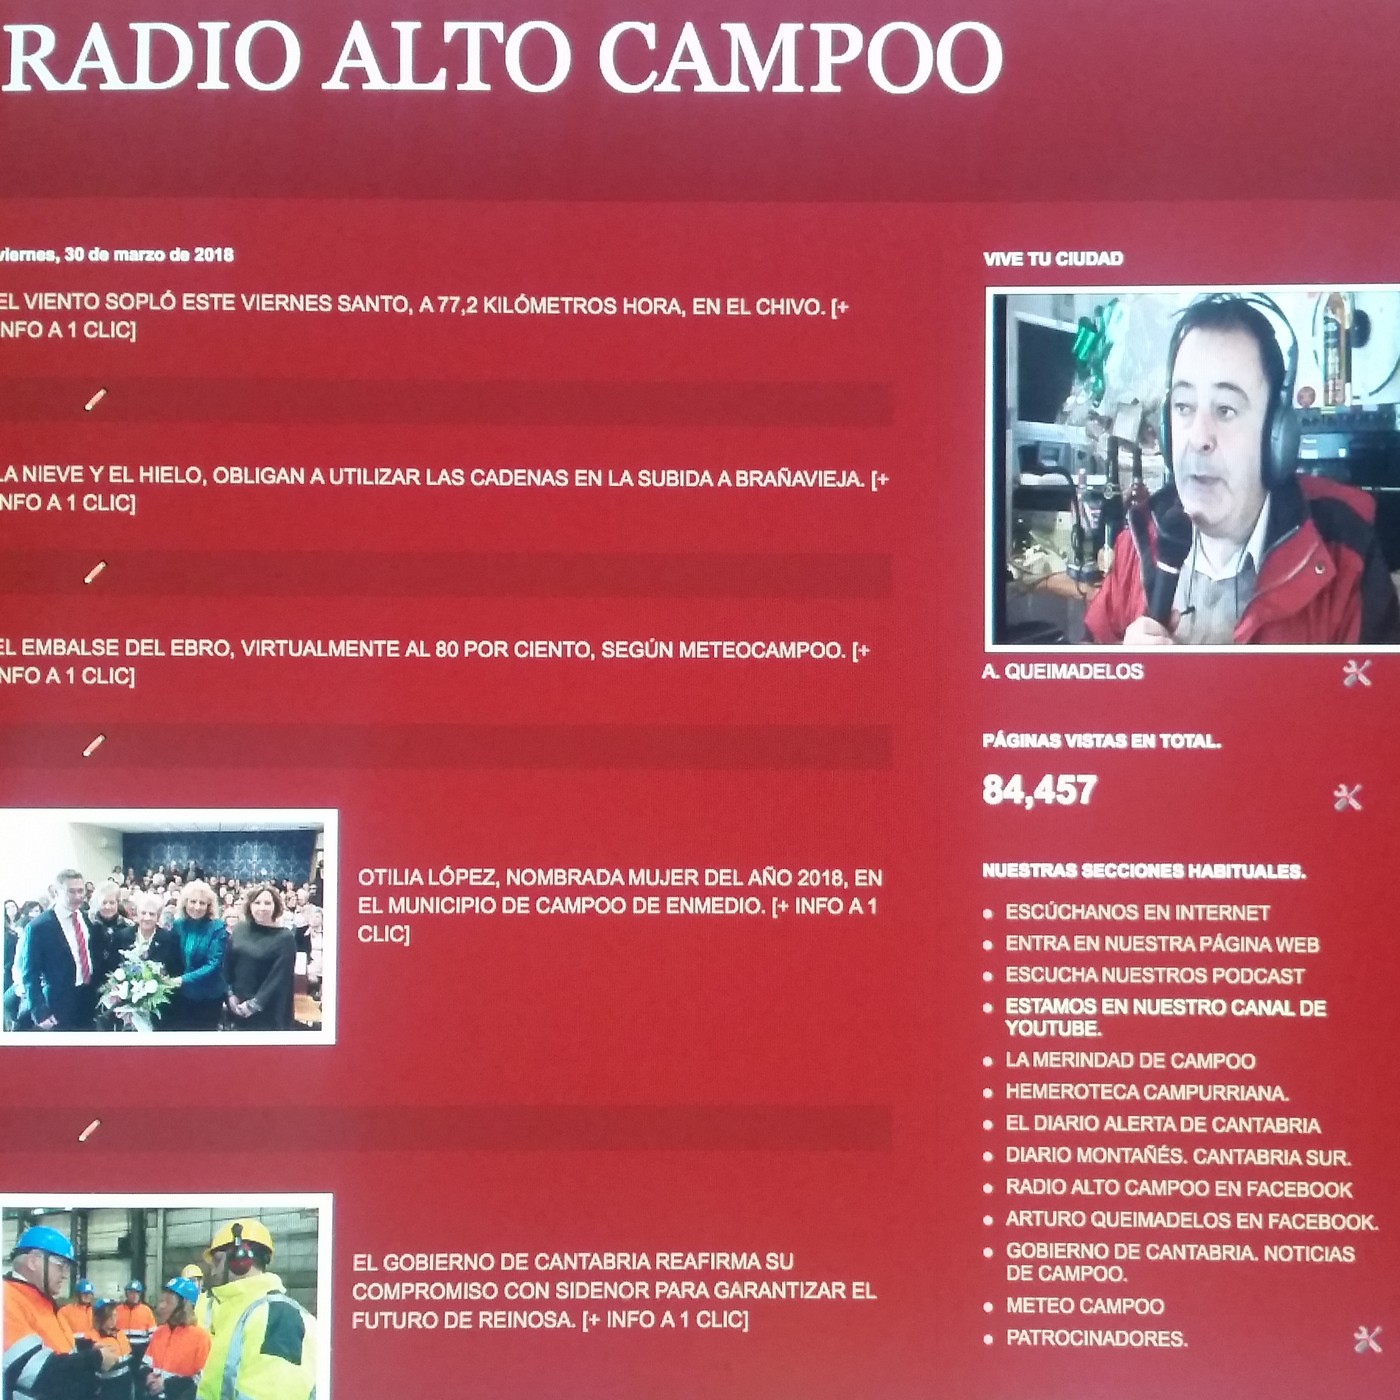 Campoo al Día Noticias, de Radio Alto Campoo (lunes 20 de diciembre de 2021